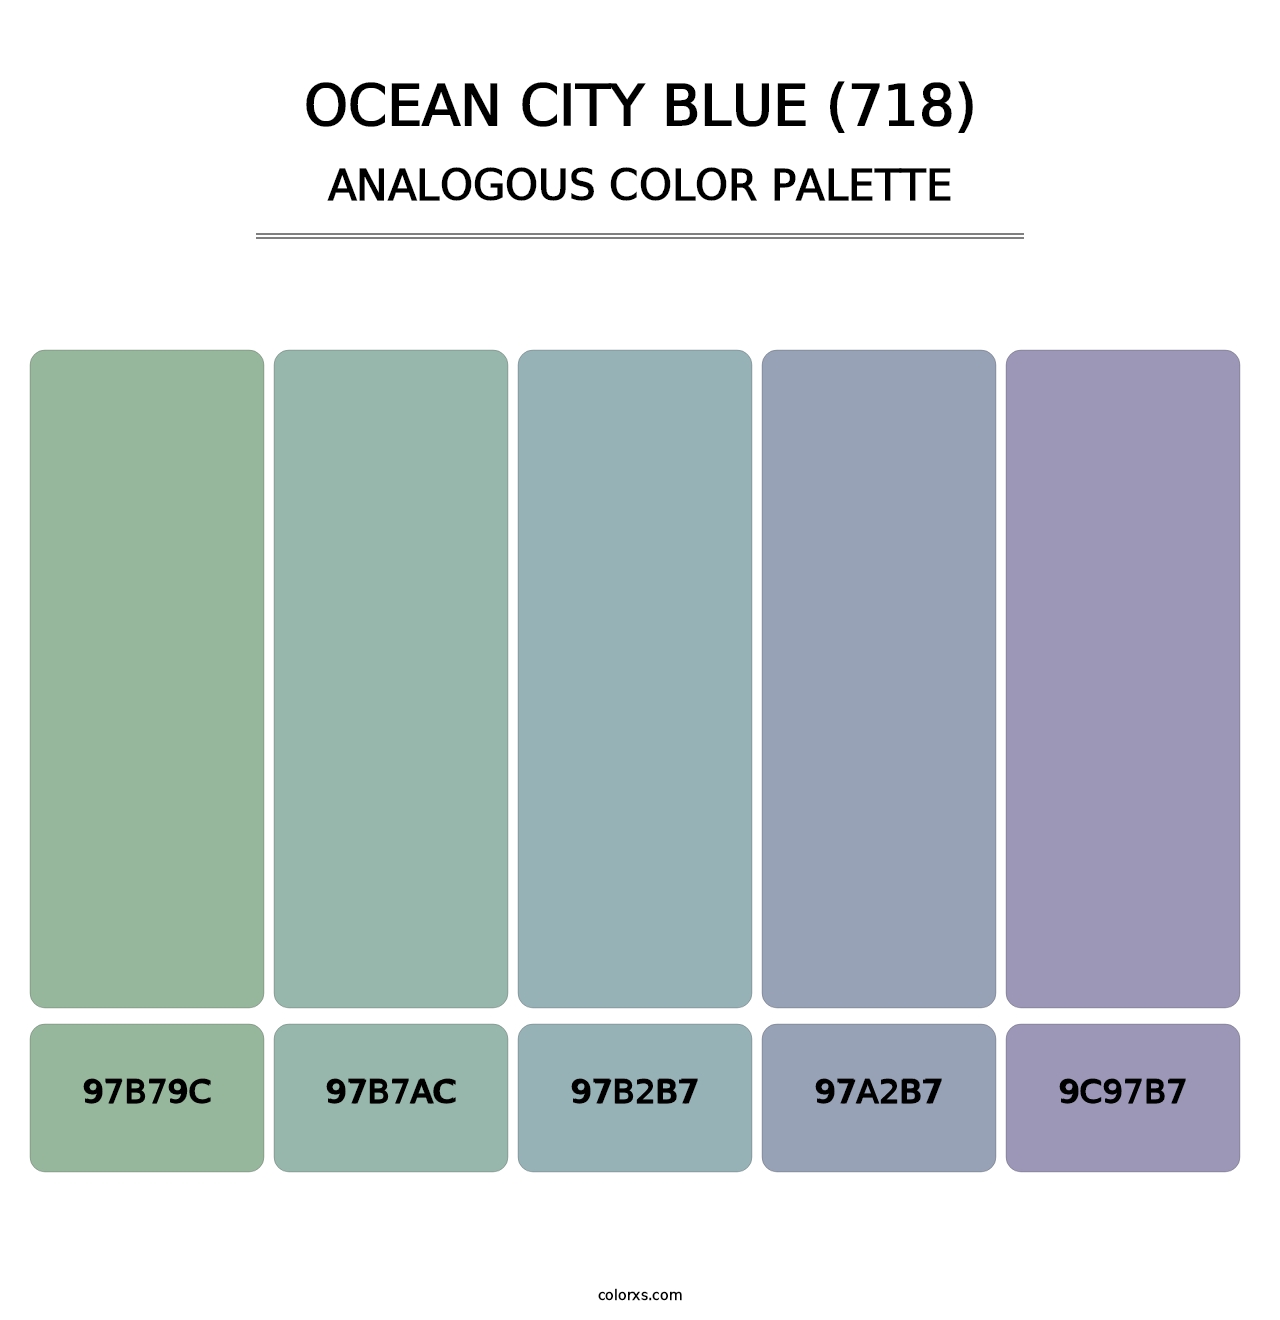 Ocean City Blue (718) - Analogous Color Palette